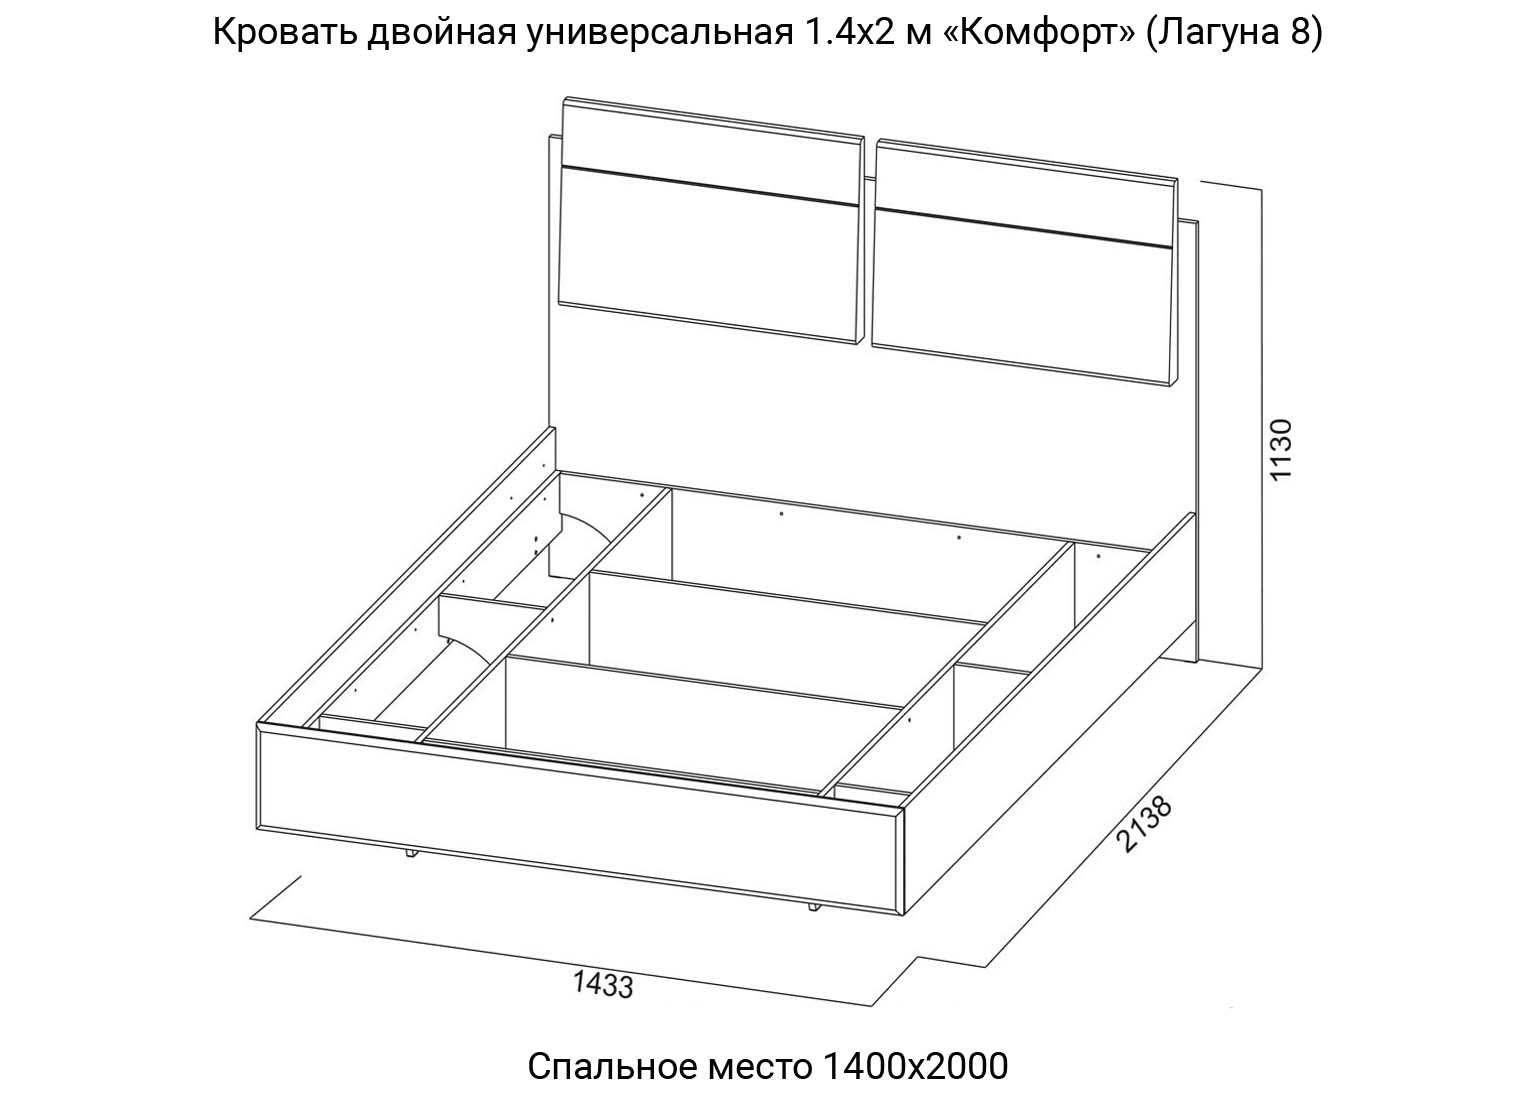 Спальня Лагуна 8 Кровать двойная 1400 мм Комфорт схема SV-Мебель